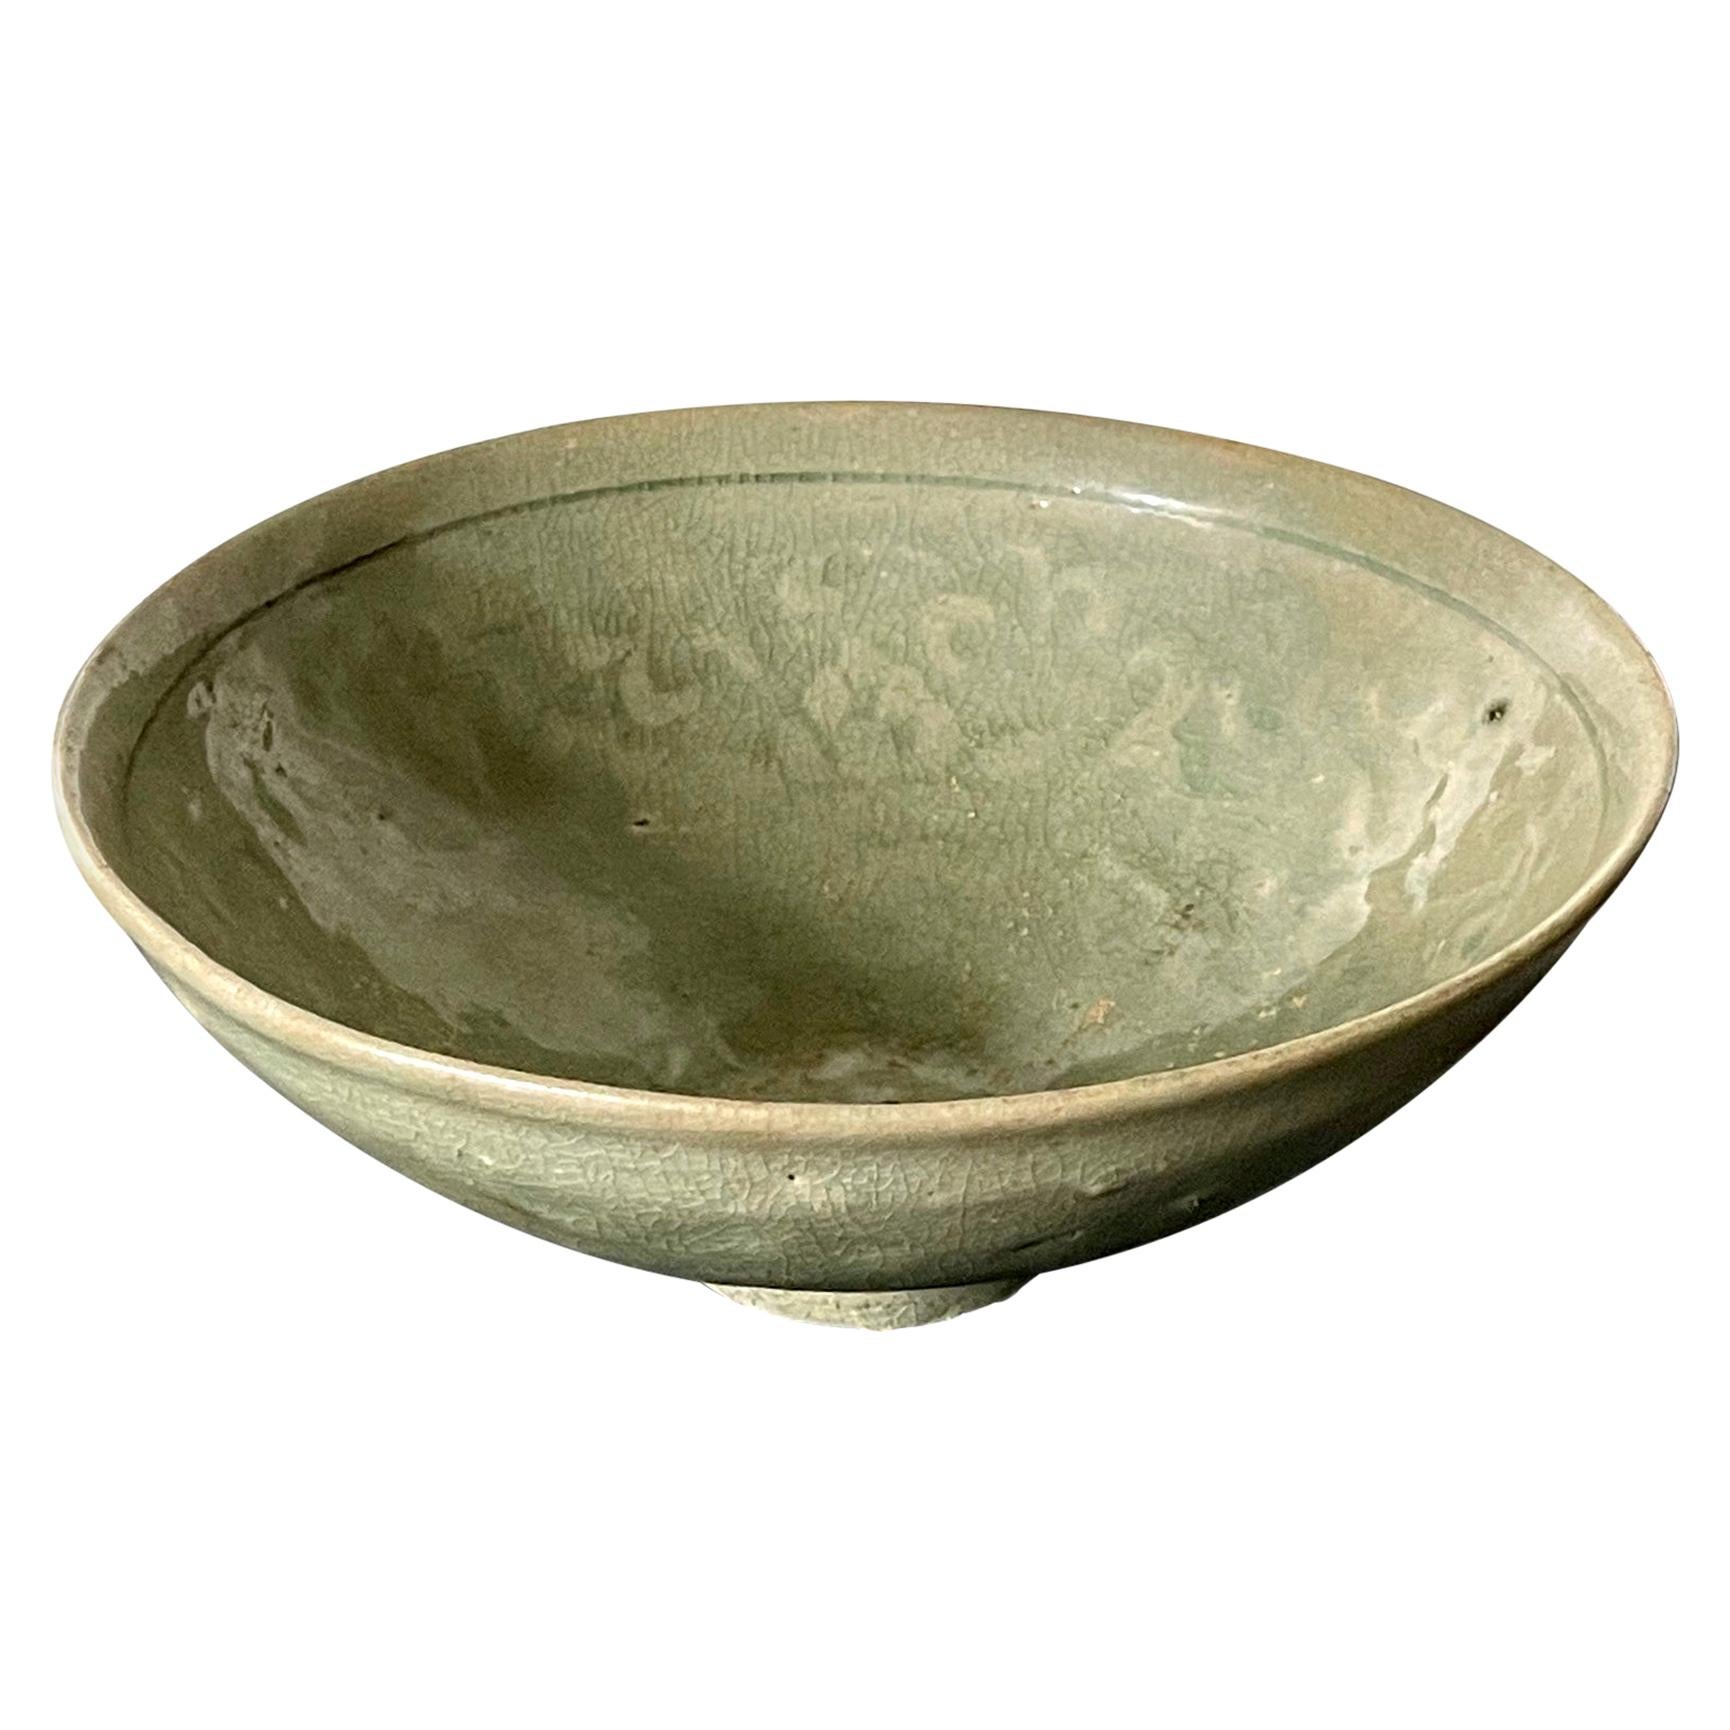 Antique Korean Ceramic Bowl with Incised Design 